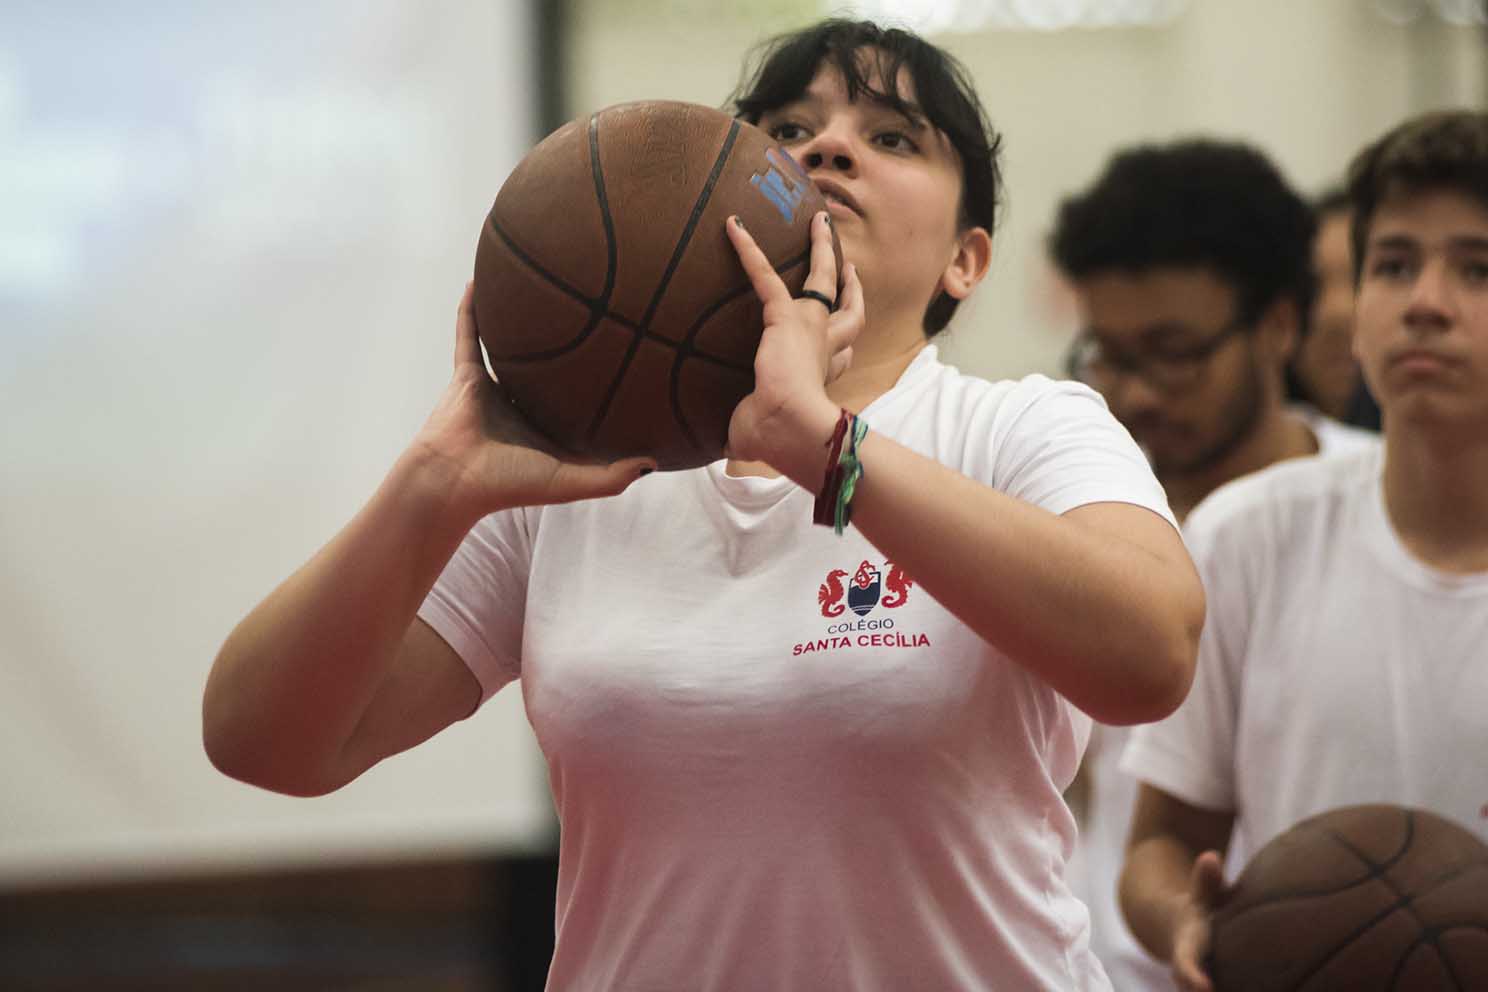 Companhia Belém on X: O NBA Basketball School é o programa de  desenvolvimento de crianças e jovens atletas através do ensino de basquete  com a metodologia da NBA.⁣ ⁣ Faça já sua